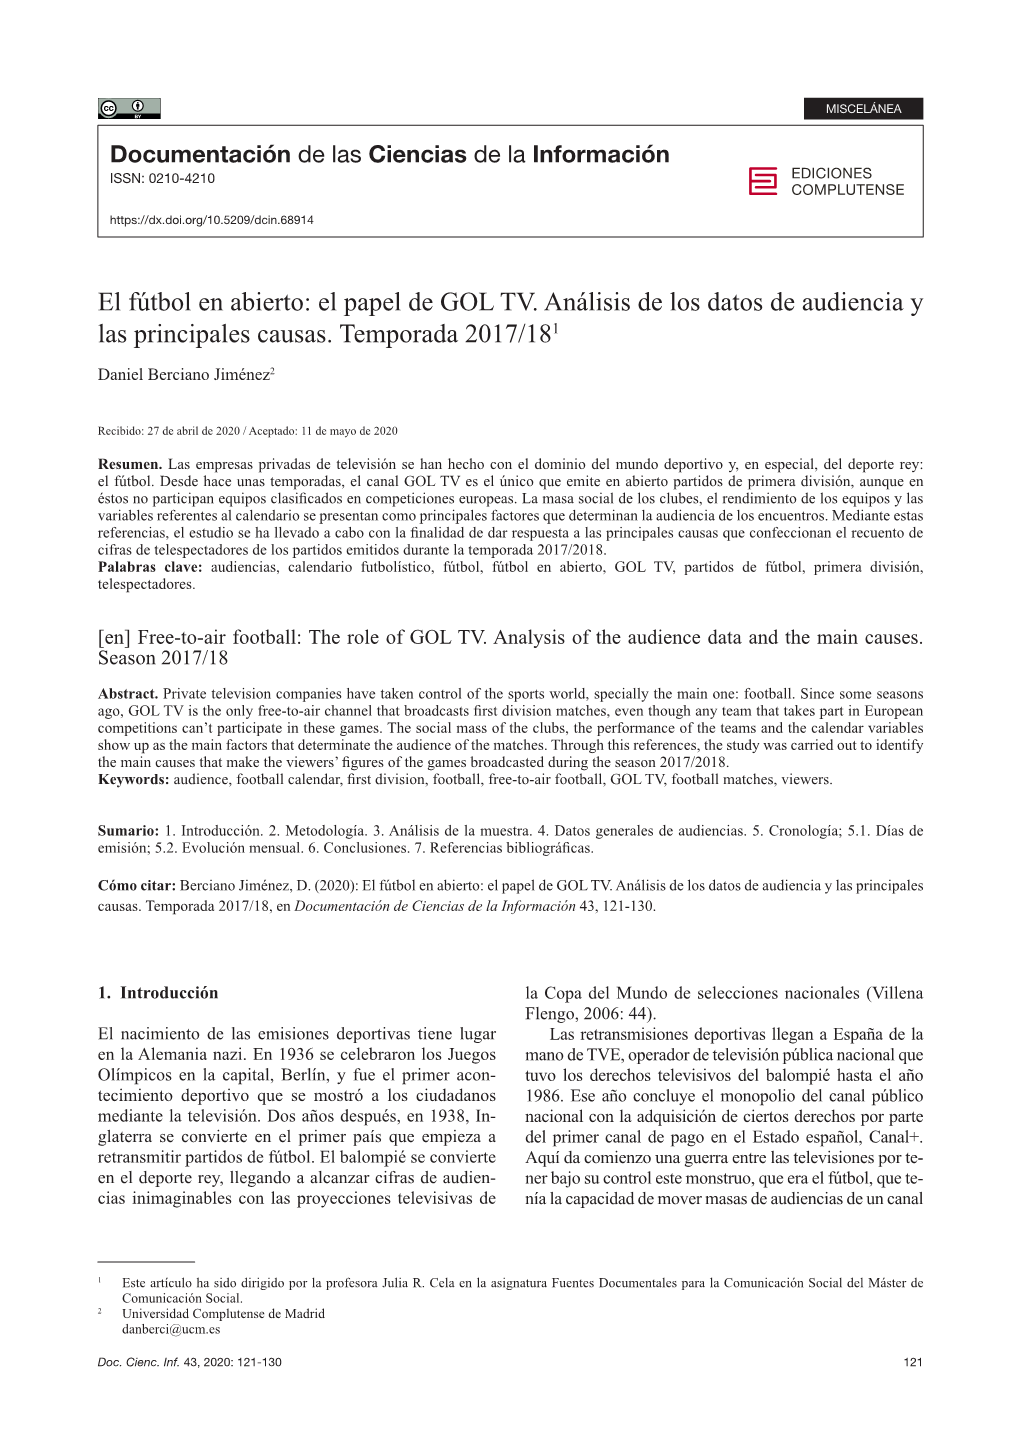 El Papel De GOL TV. Análisis De Los Datos De Audiencia Y Las Principales Causas